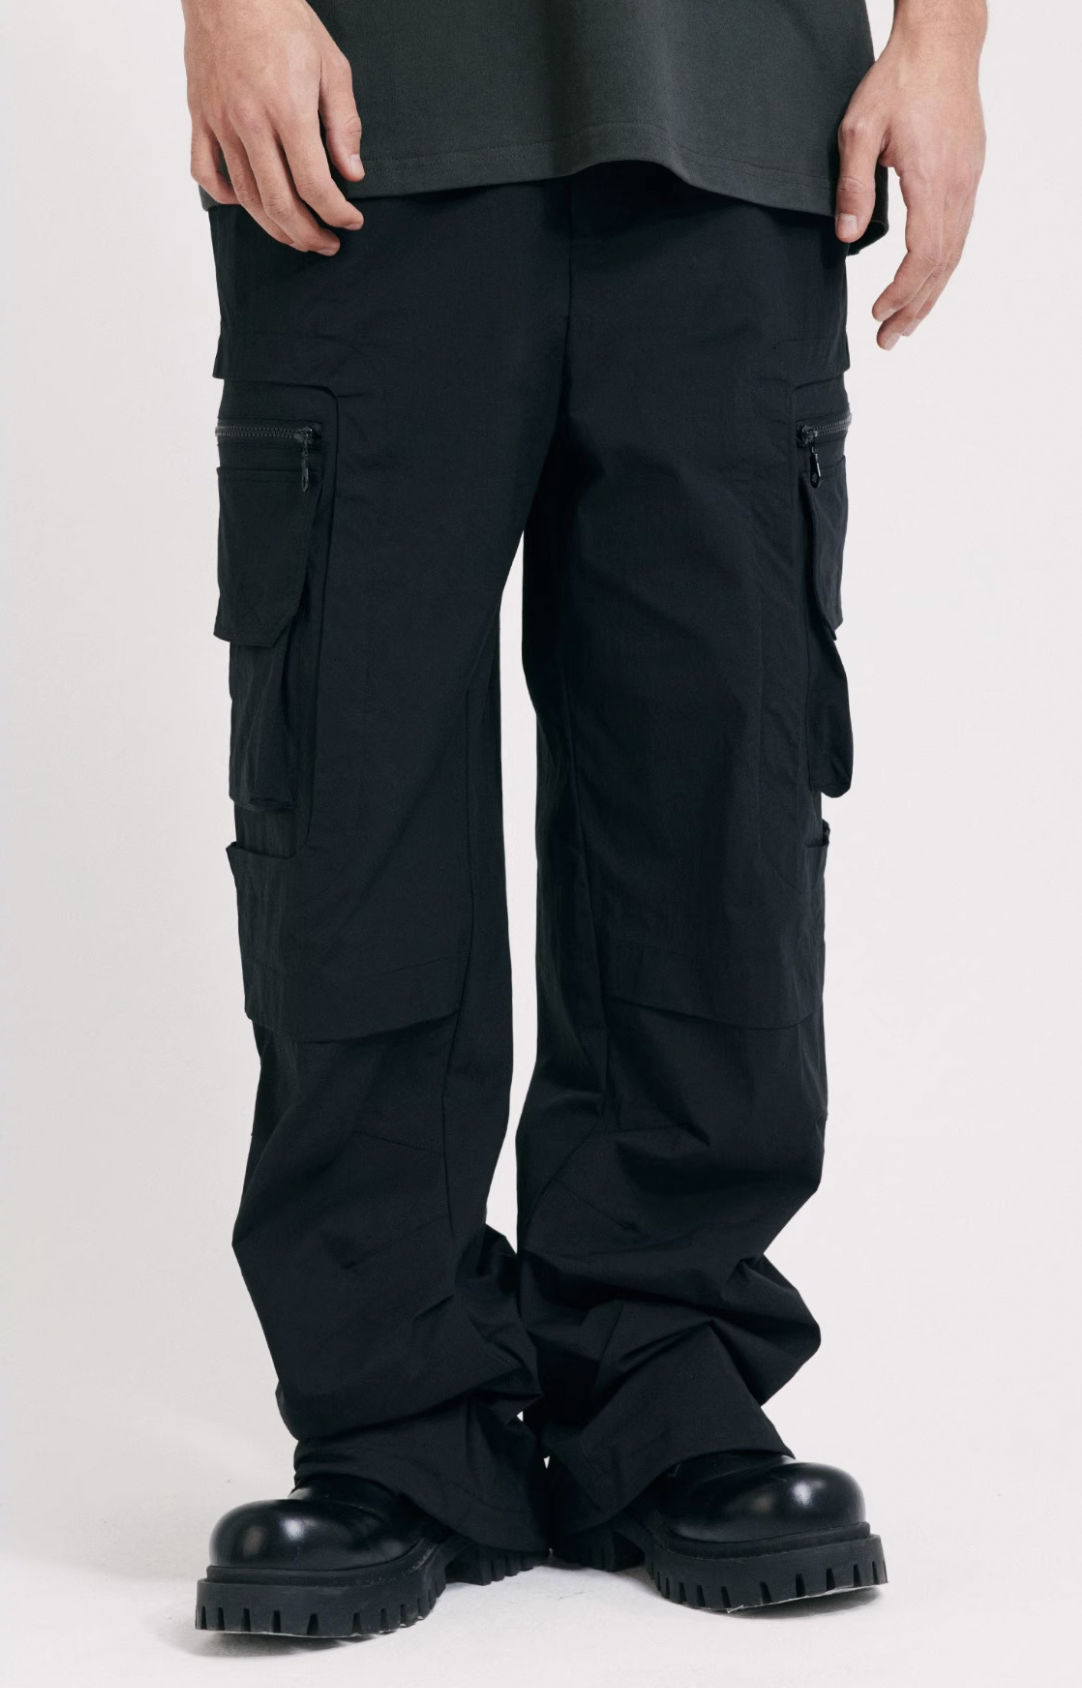 ANTIDOTE Multi Pocket Zippered Pants